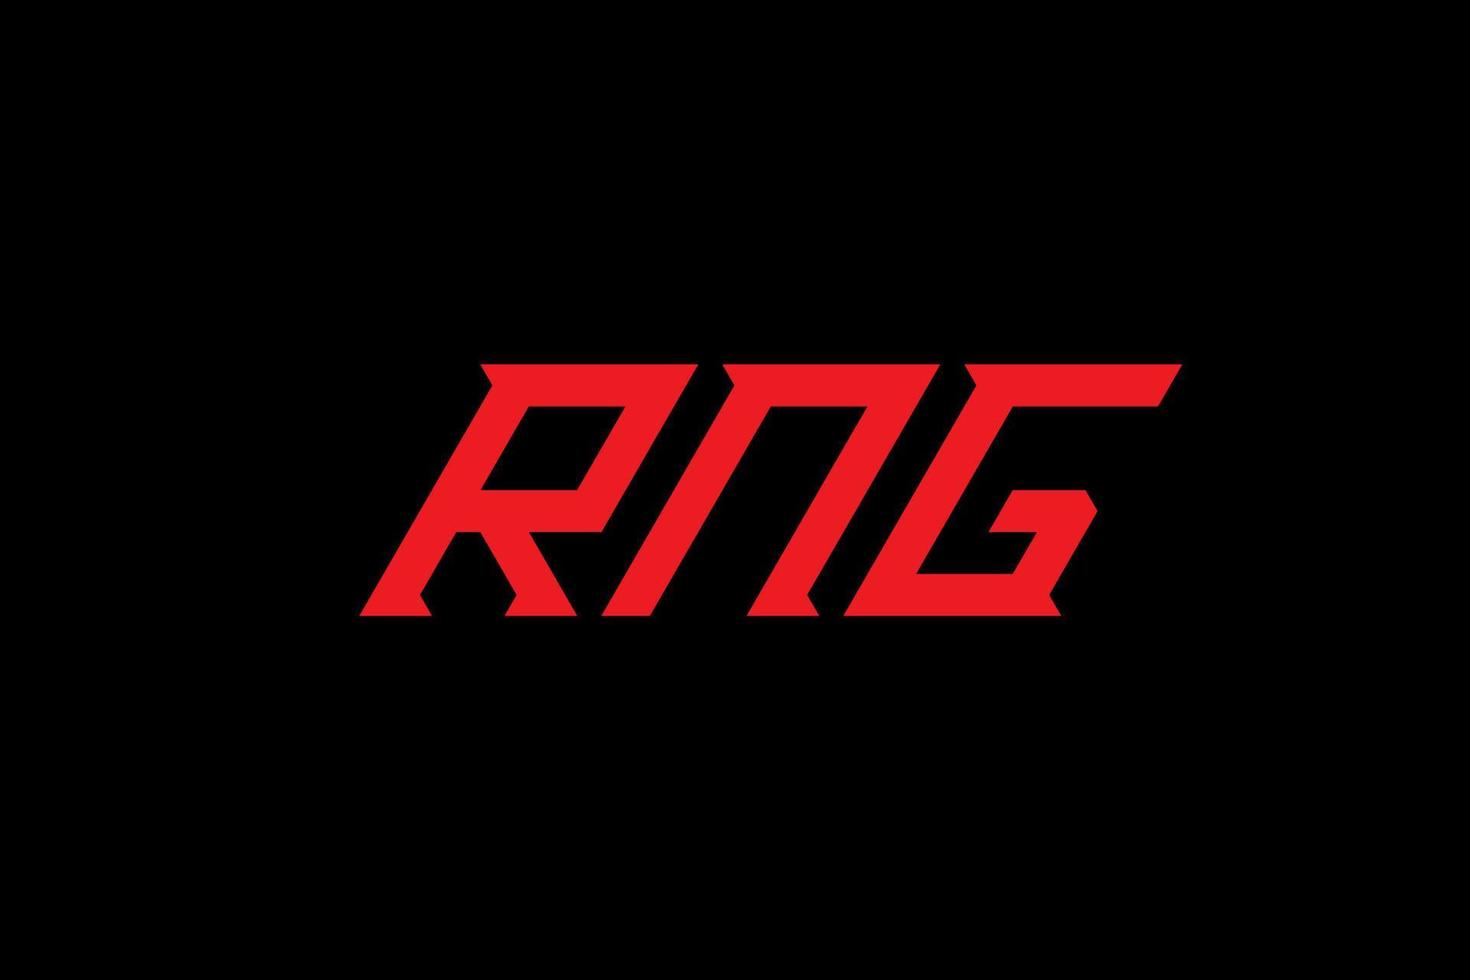 diseño de logotipo de letra y alfabeto rng vector